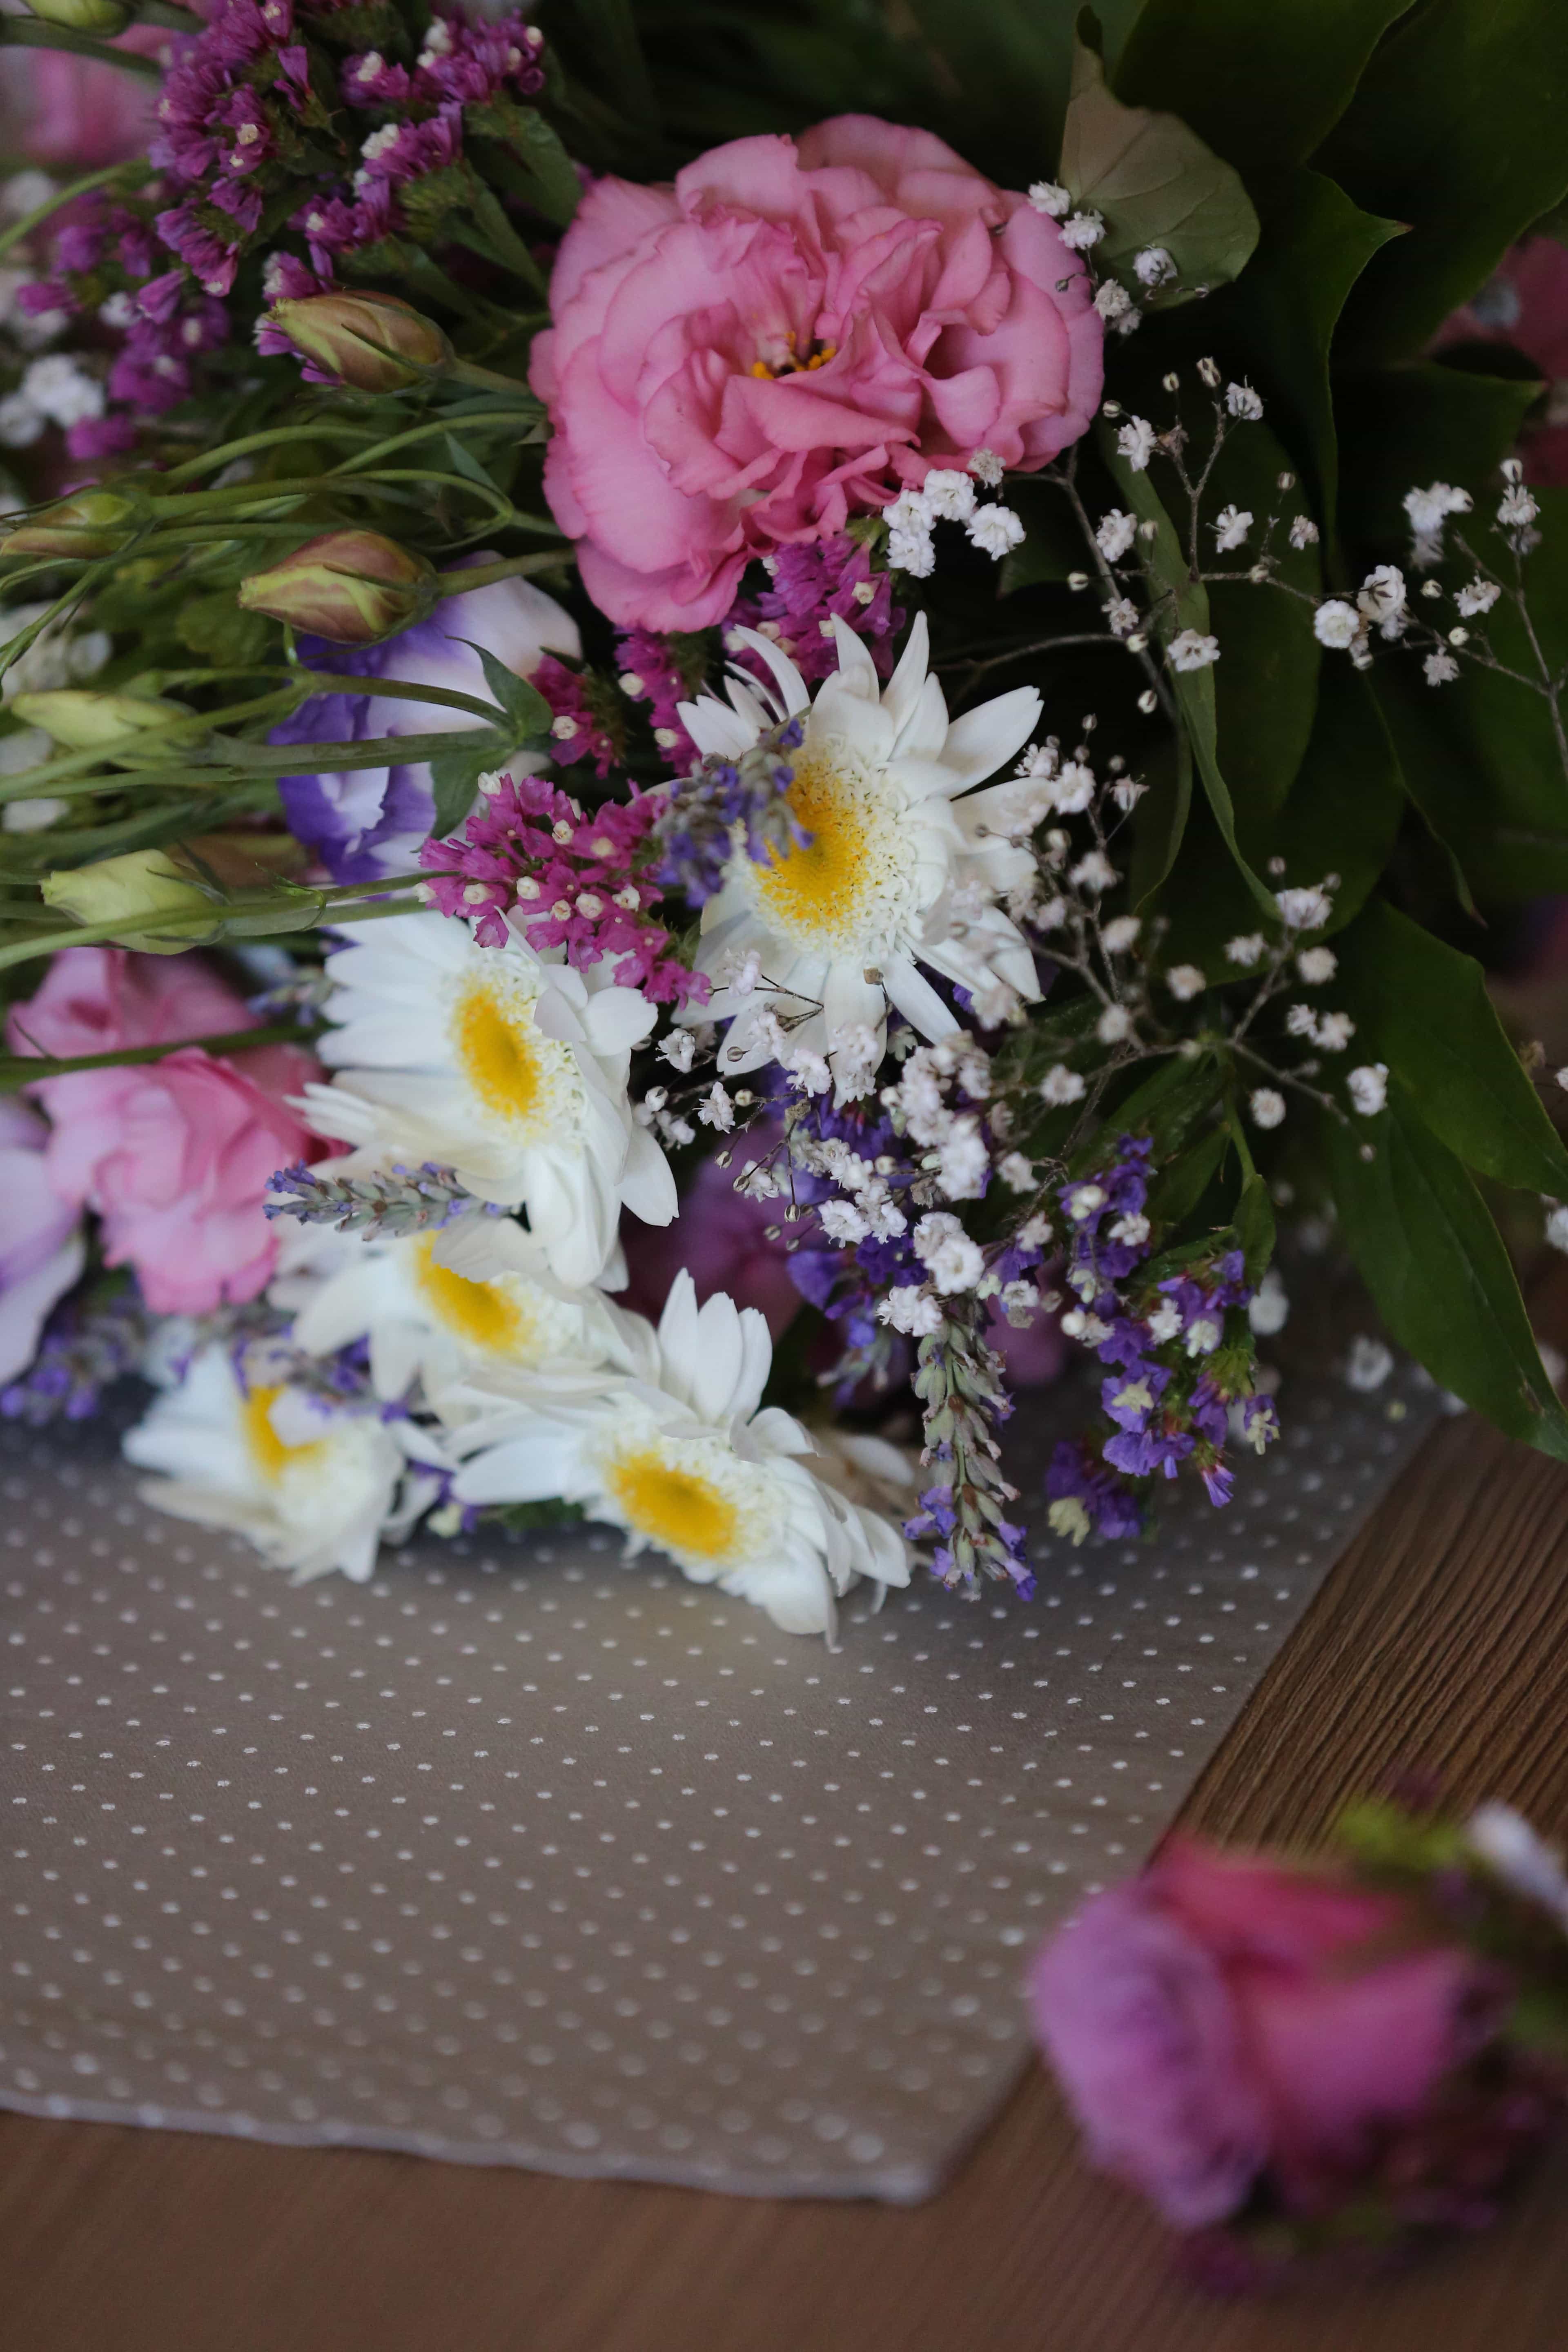 Бесплатное изображение: букет, стол, розы, Тысячелистник обыкновенный,украшения, розовый, цветы, цветок, композиция, завод